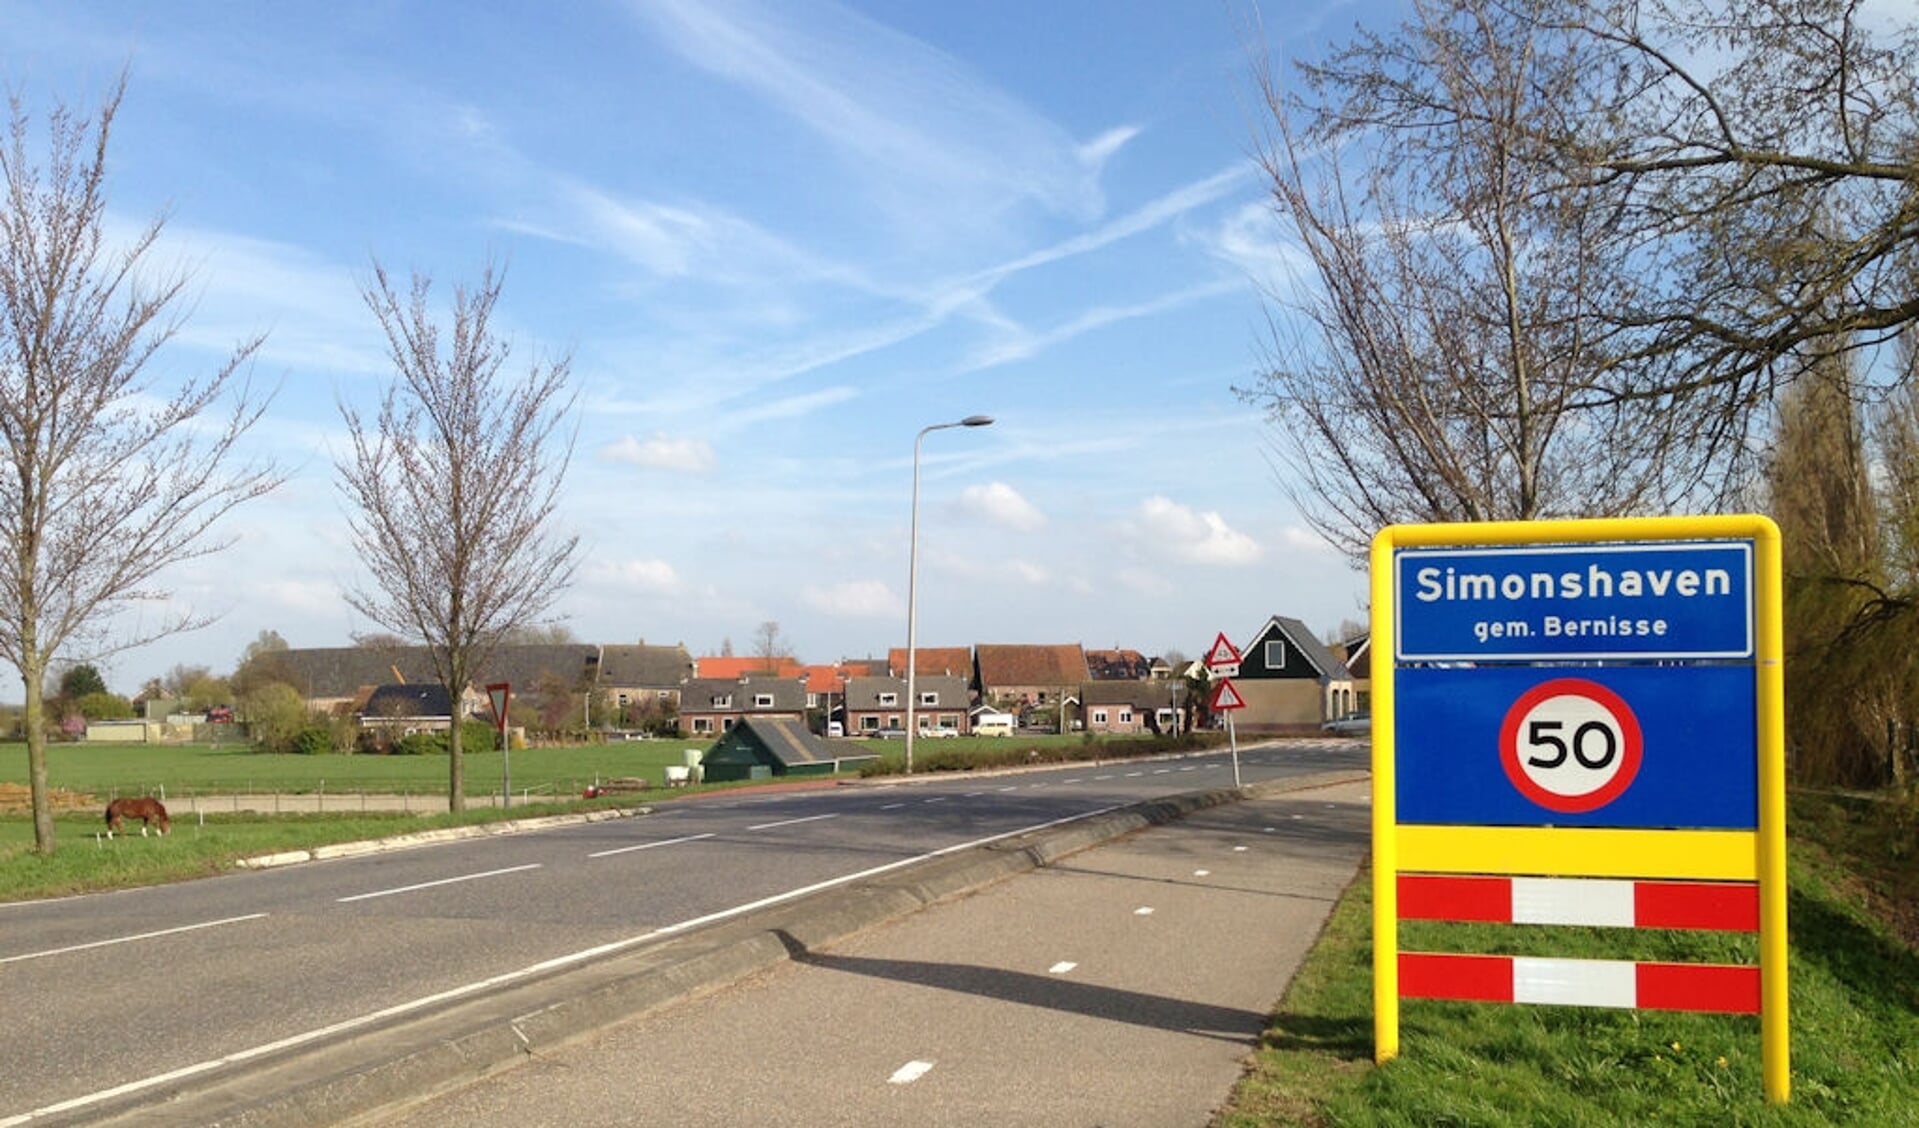 Bewoners van Simonshaven willen graag dat de snelheid in het dorp naar de 30 km gaat. 